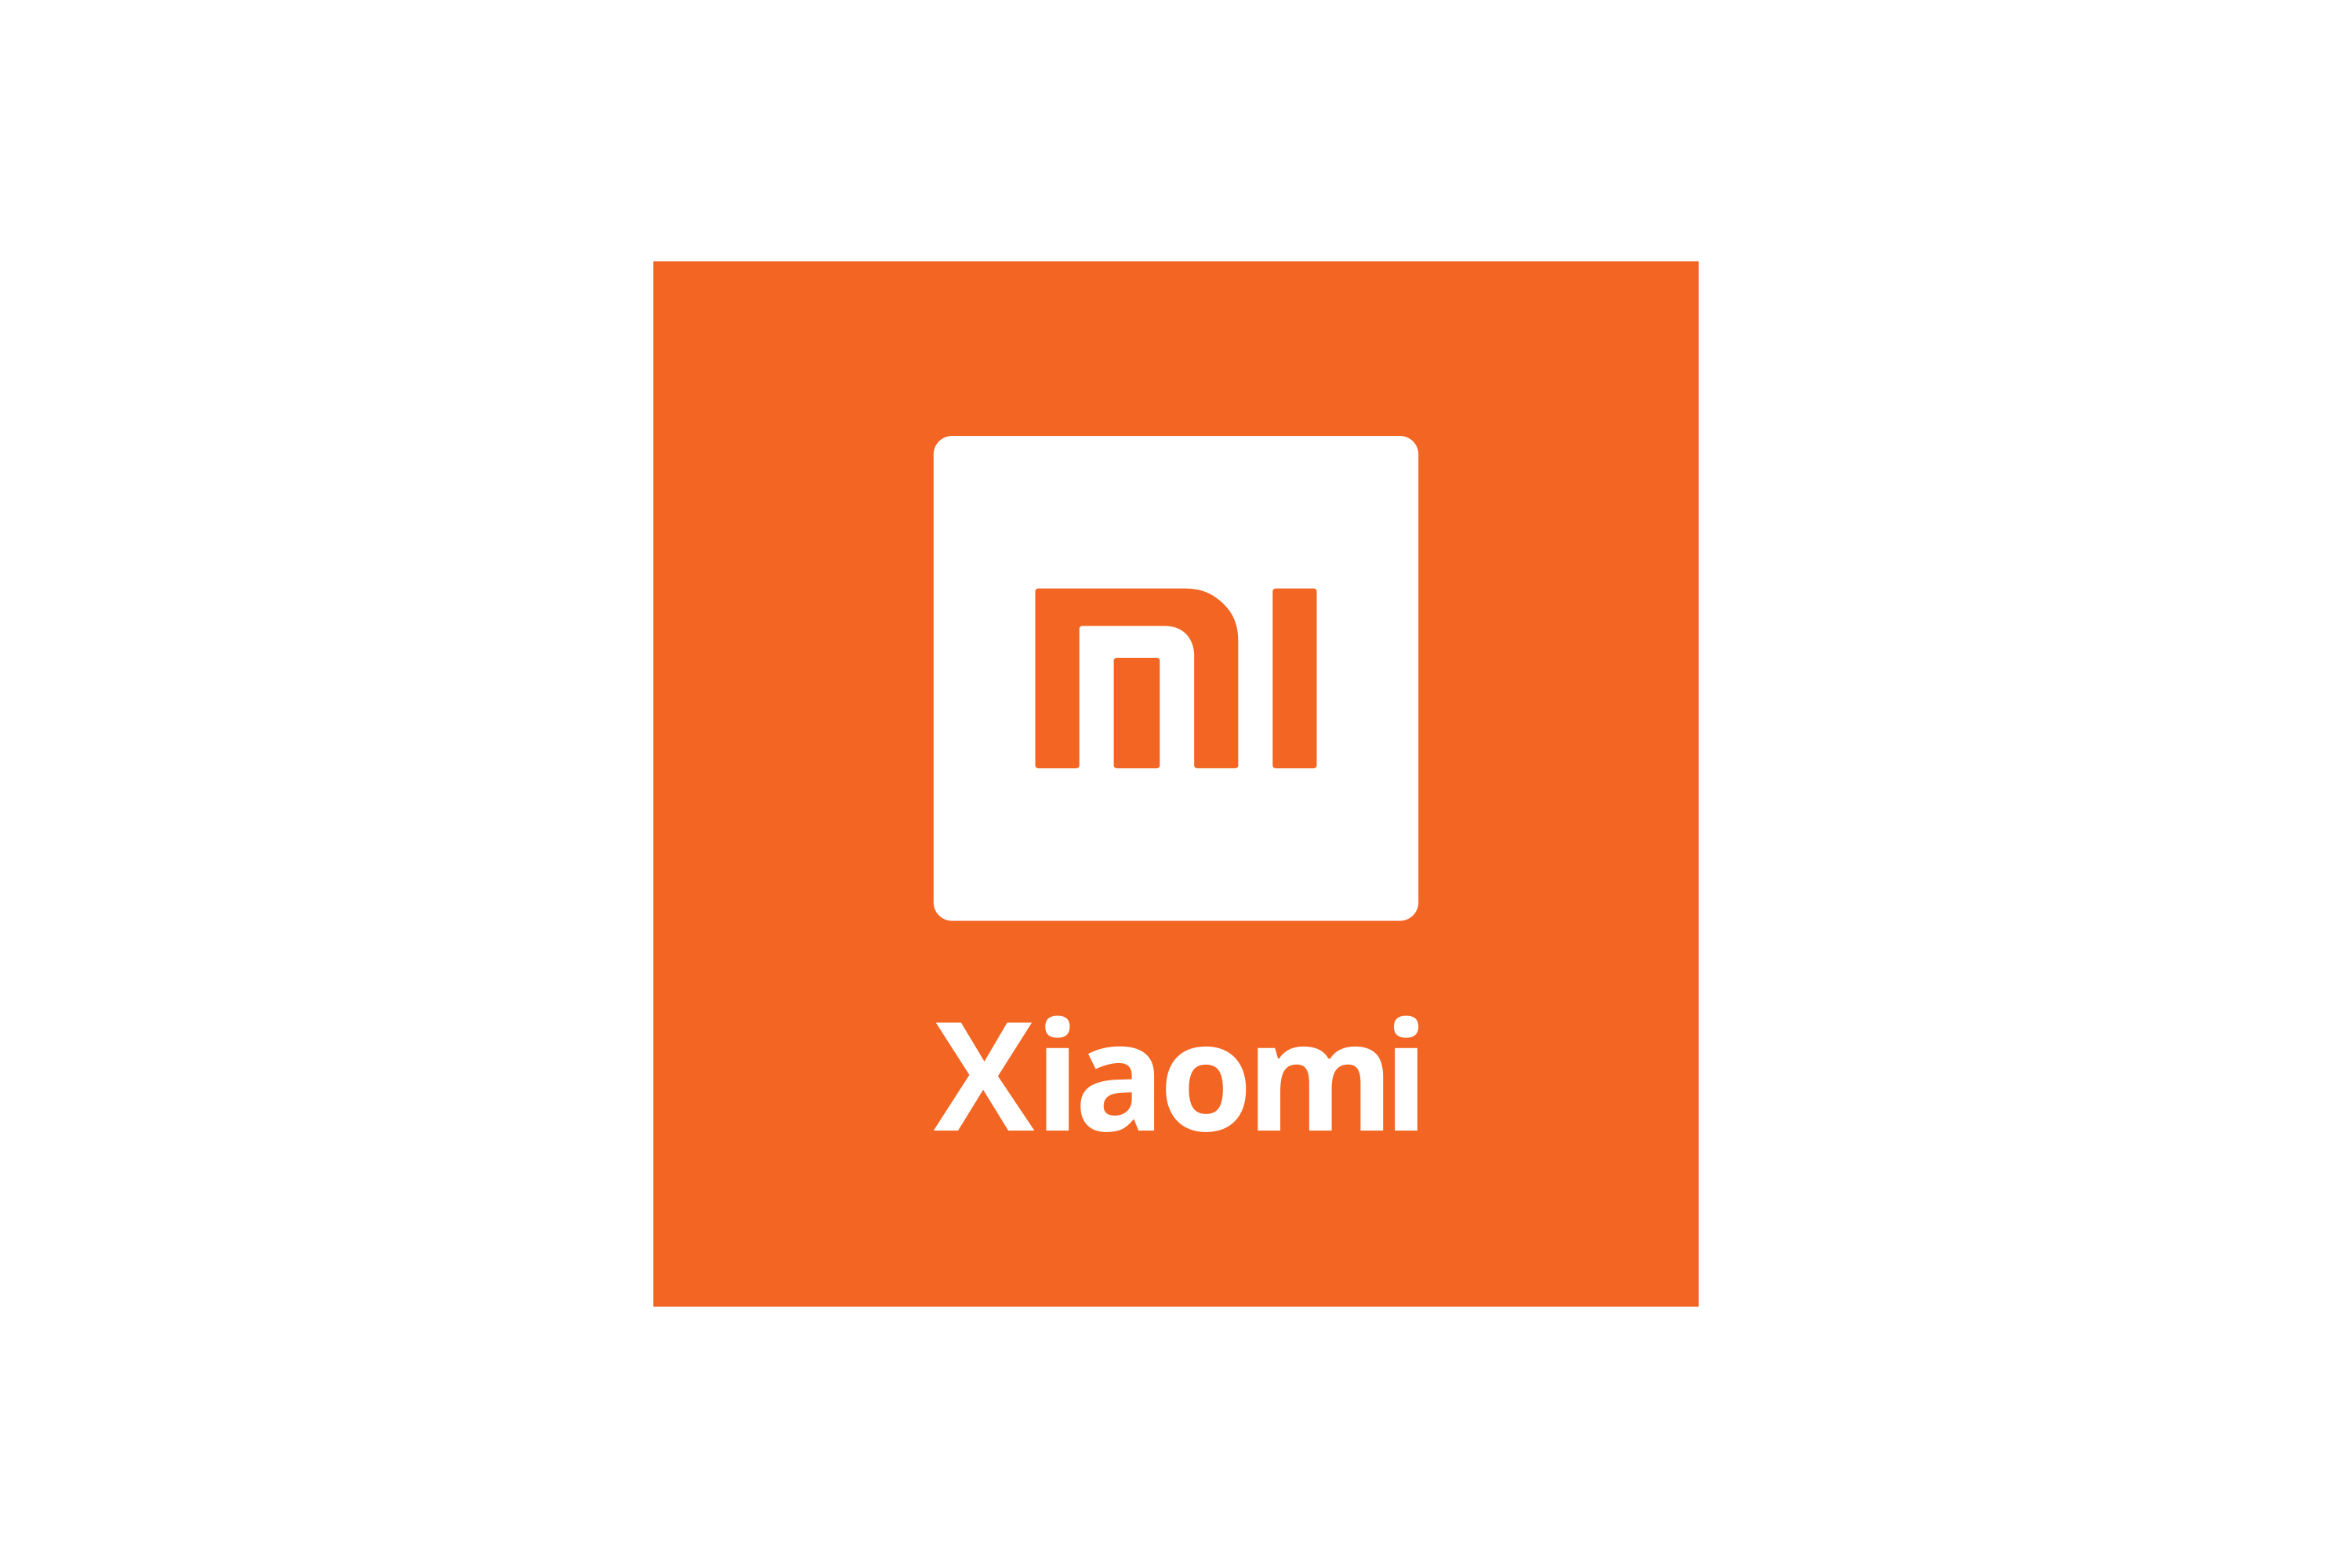 Ярлык сяоми. Логотип Сяоми. Эмблема ксиоми фирма Xiaomi. Новый логотип Xiaomi. Логотип Xiaomi на белом фоне.